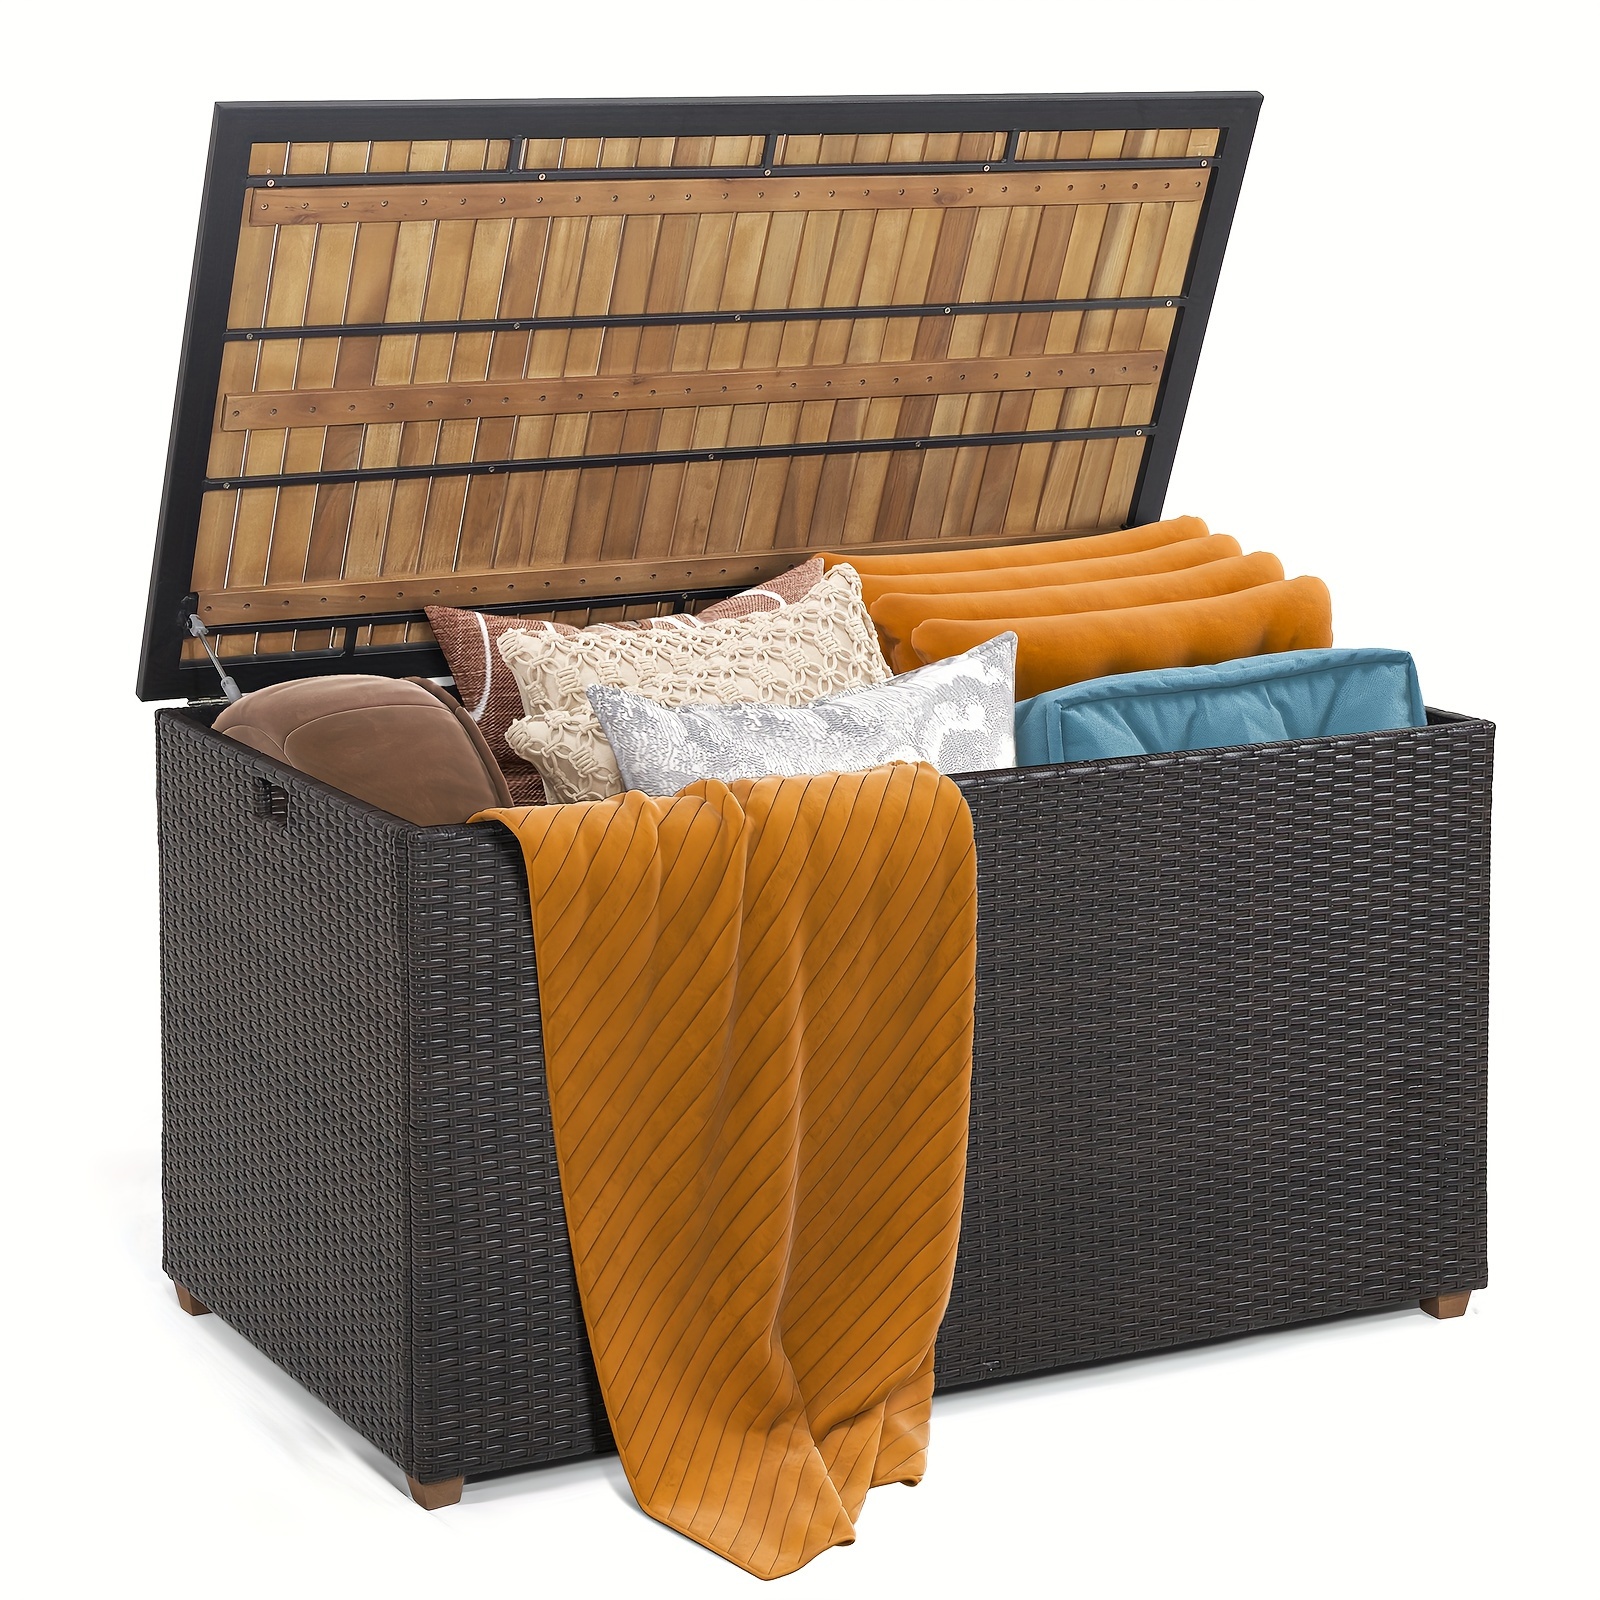 

Costway 134 Gallon Patio Wicker Storage Deck Box With Solid Acacia Wood, Outdoor Patio Organizer